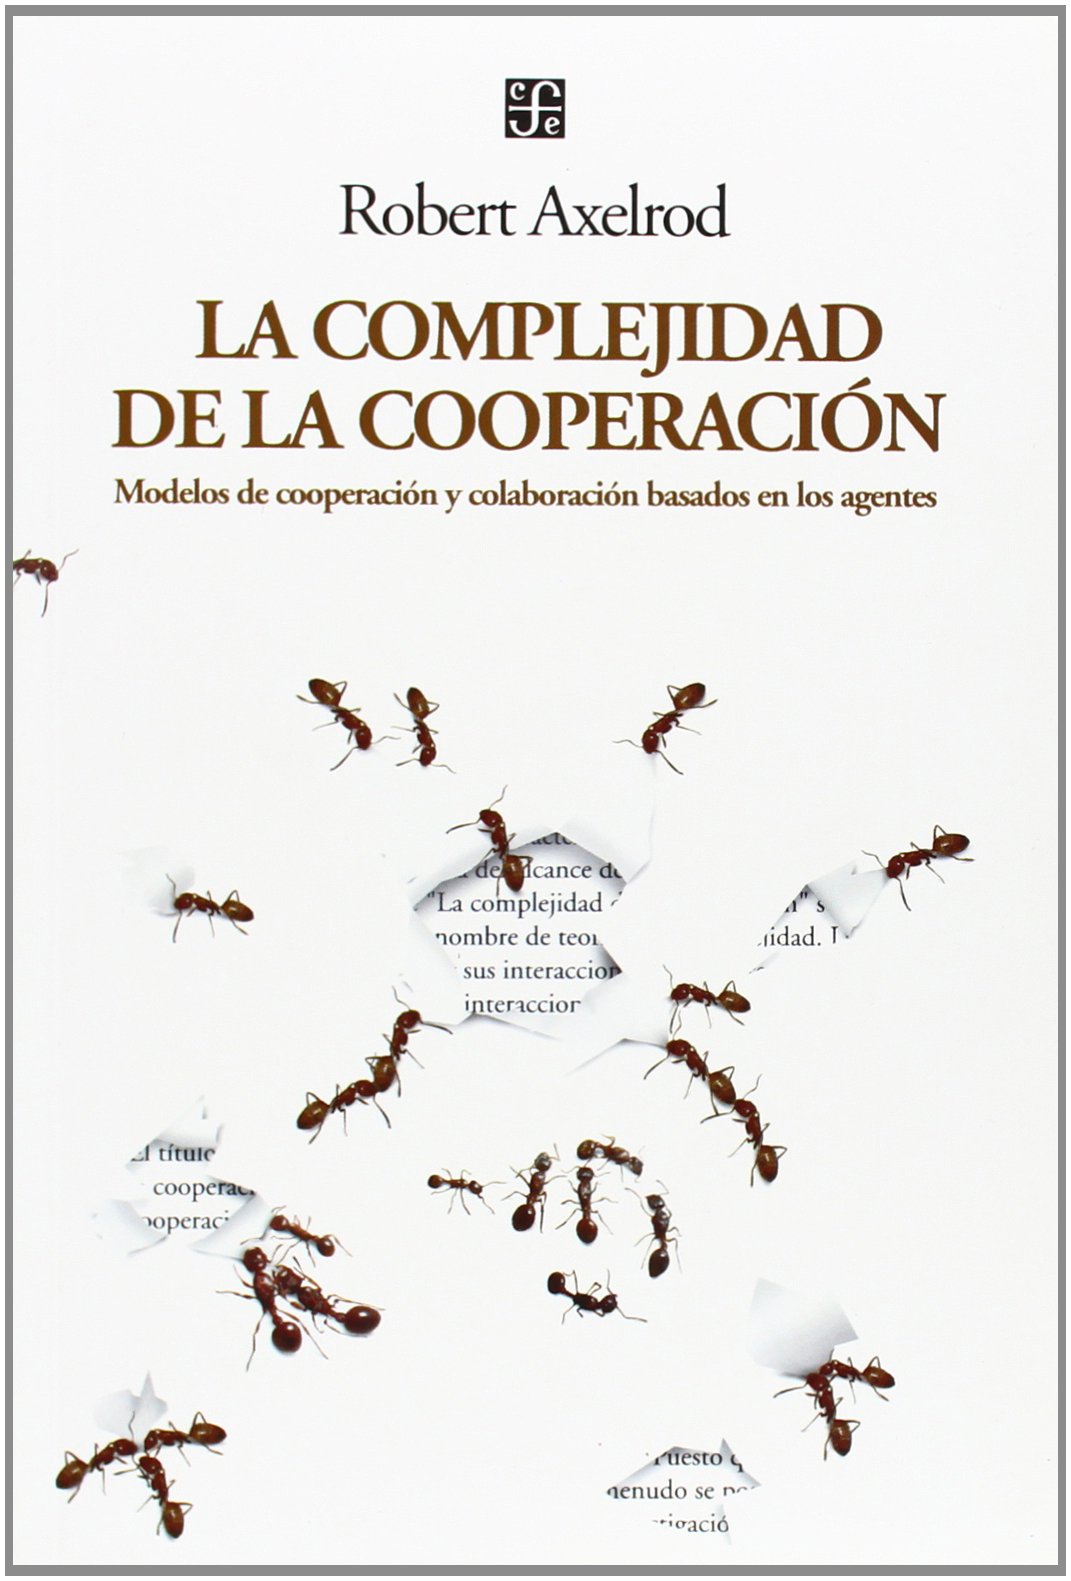 La complejidad de la cooperación